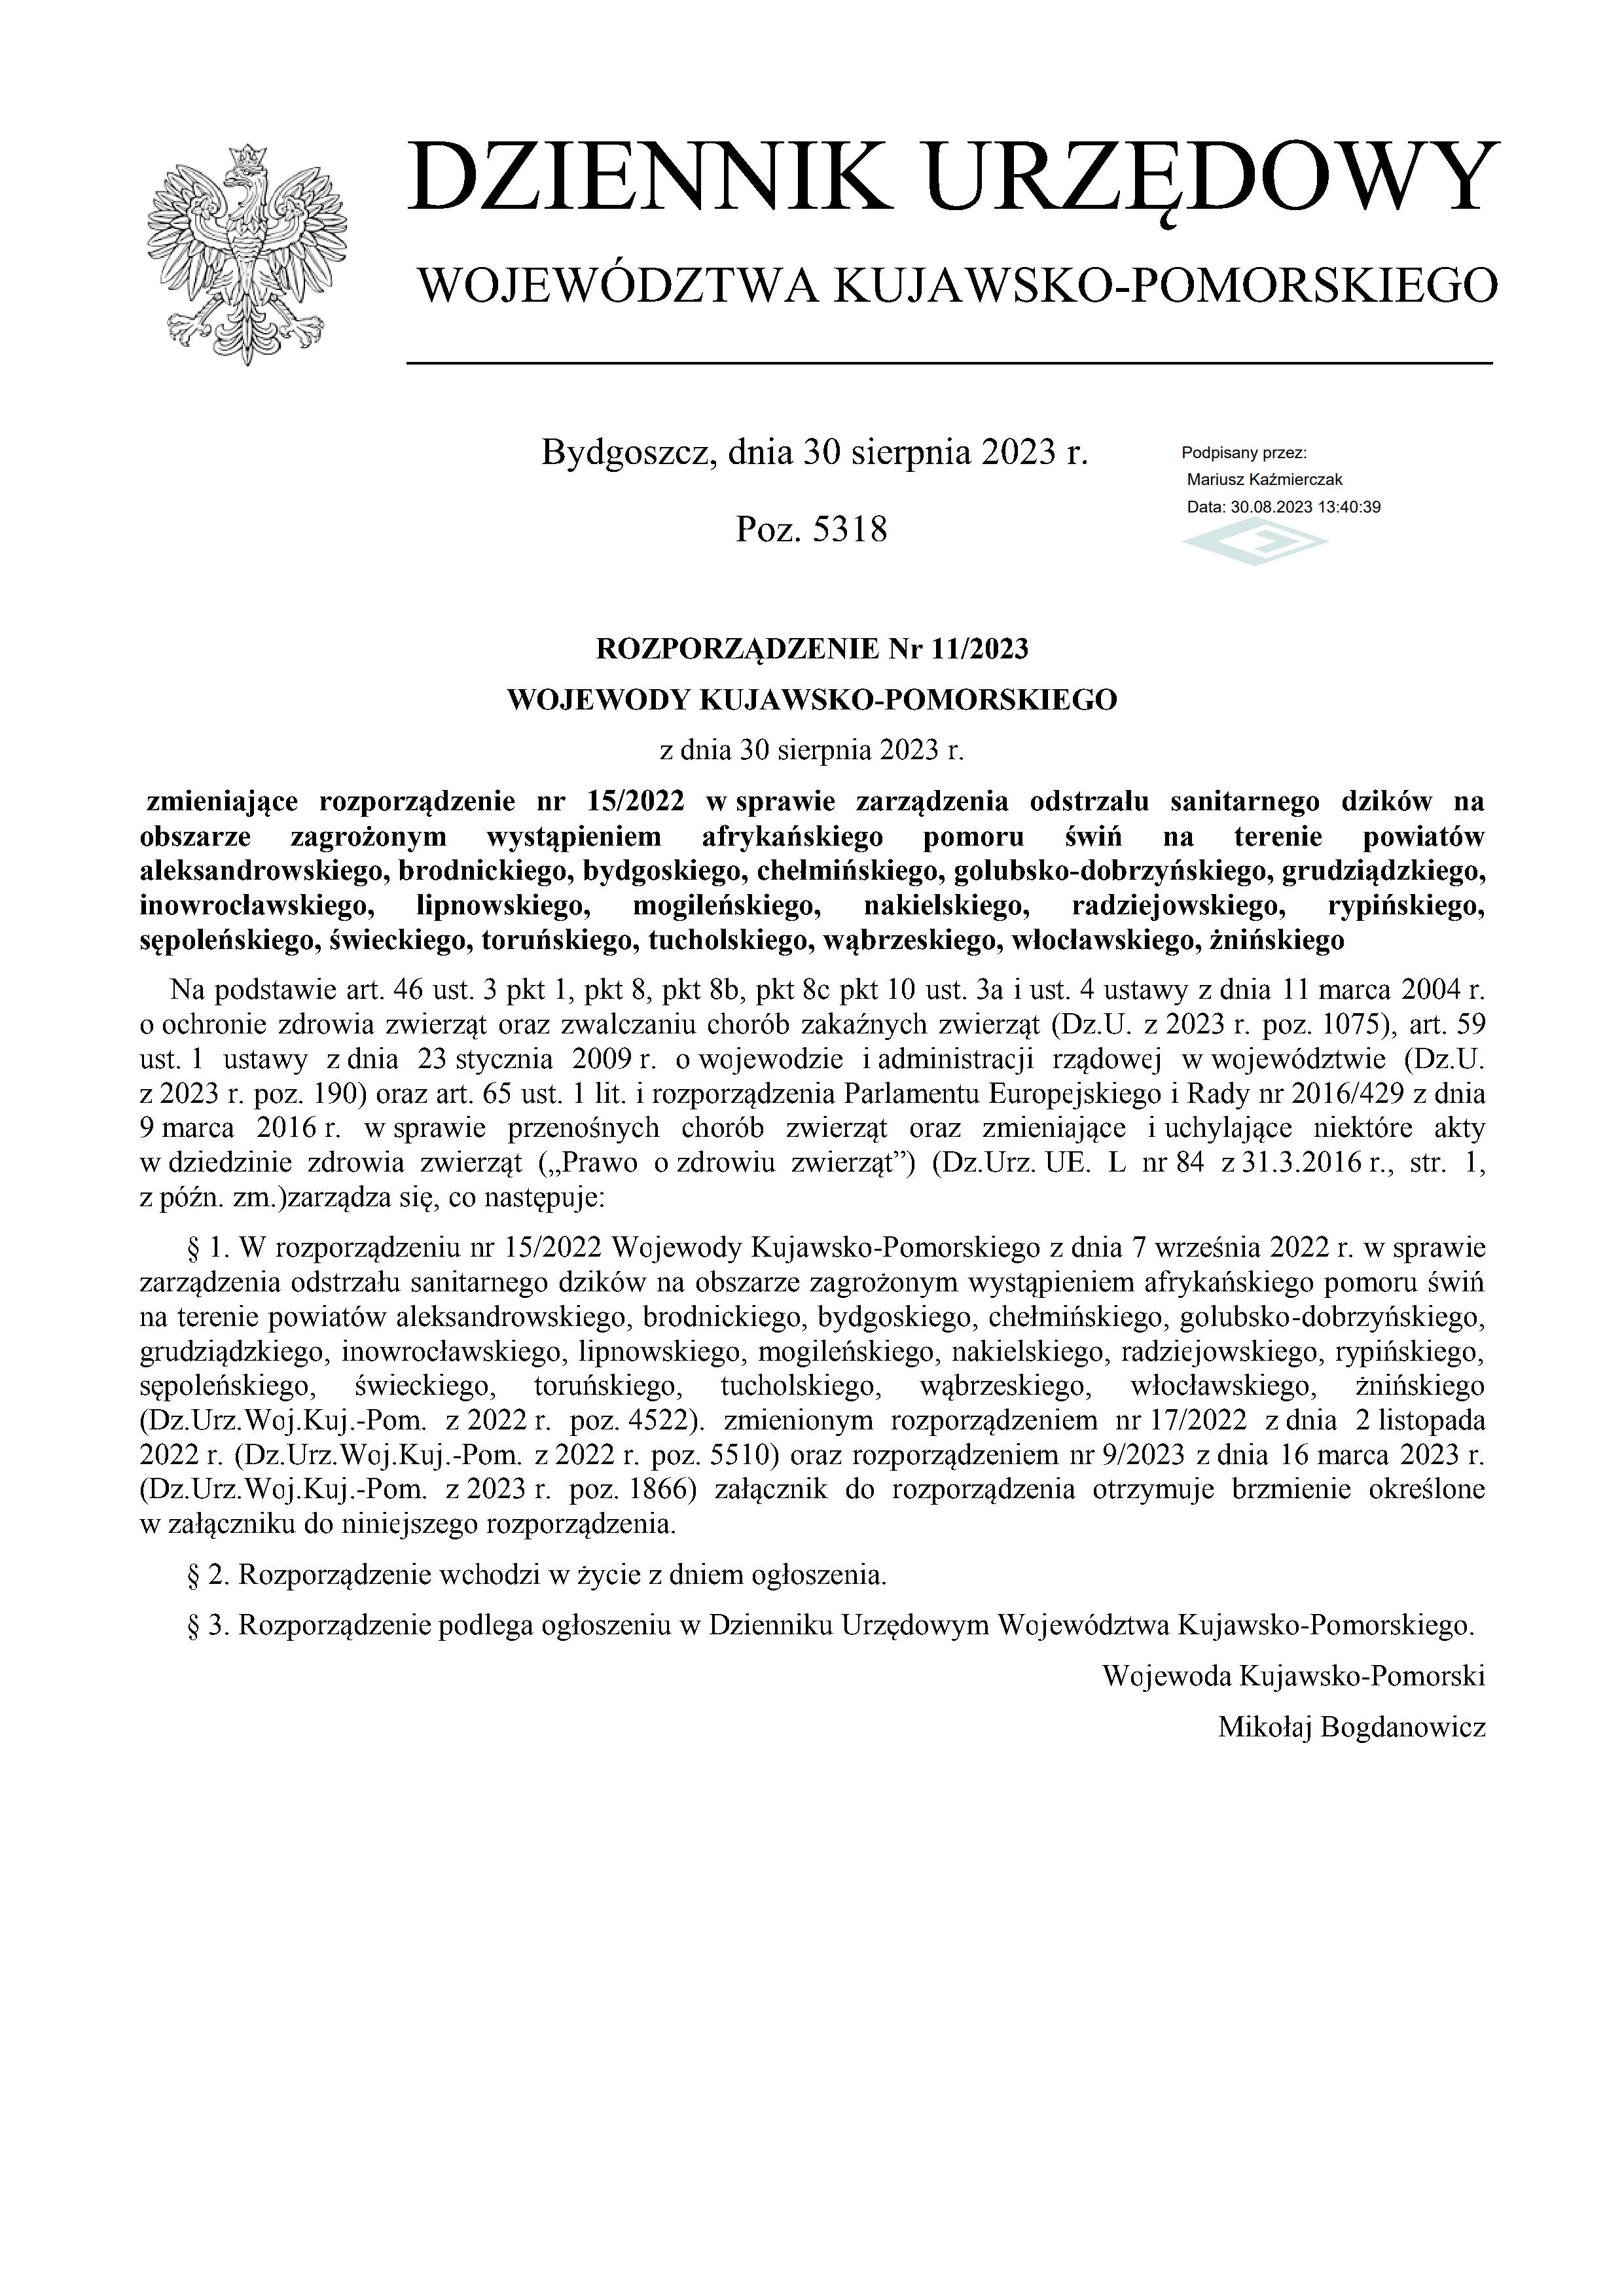 Rozporządzenie Wojewody Kujawsko-Pomorskiego w sprawie zarządzenia odstrzału sanitarnego dzików na obszarze zagrożonym wystąpieniem afrykańskiego pomoru świń